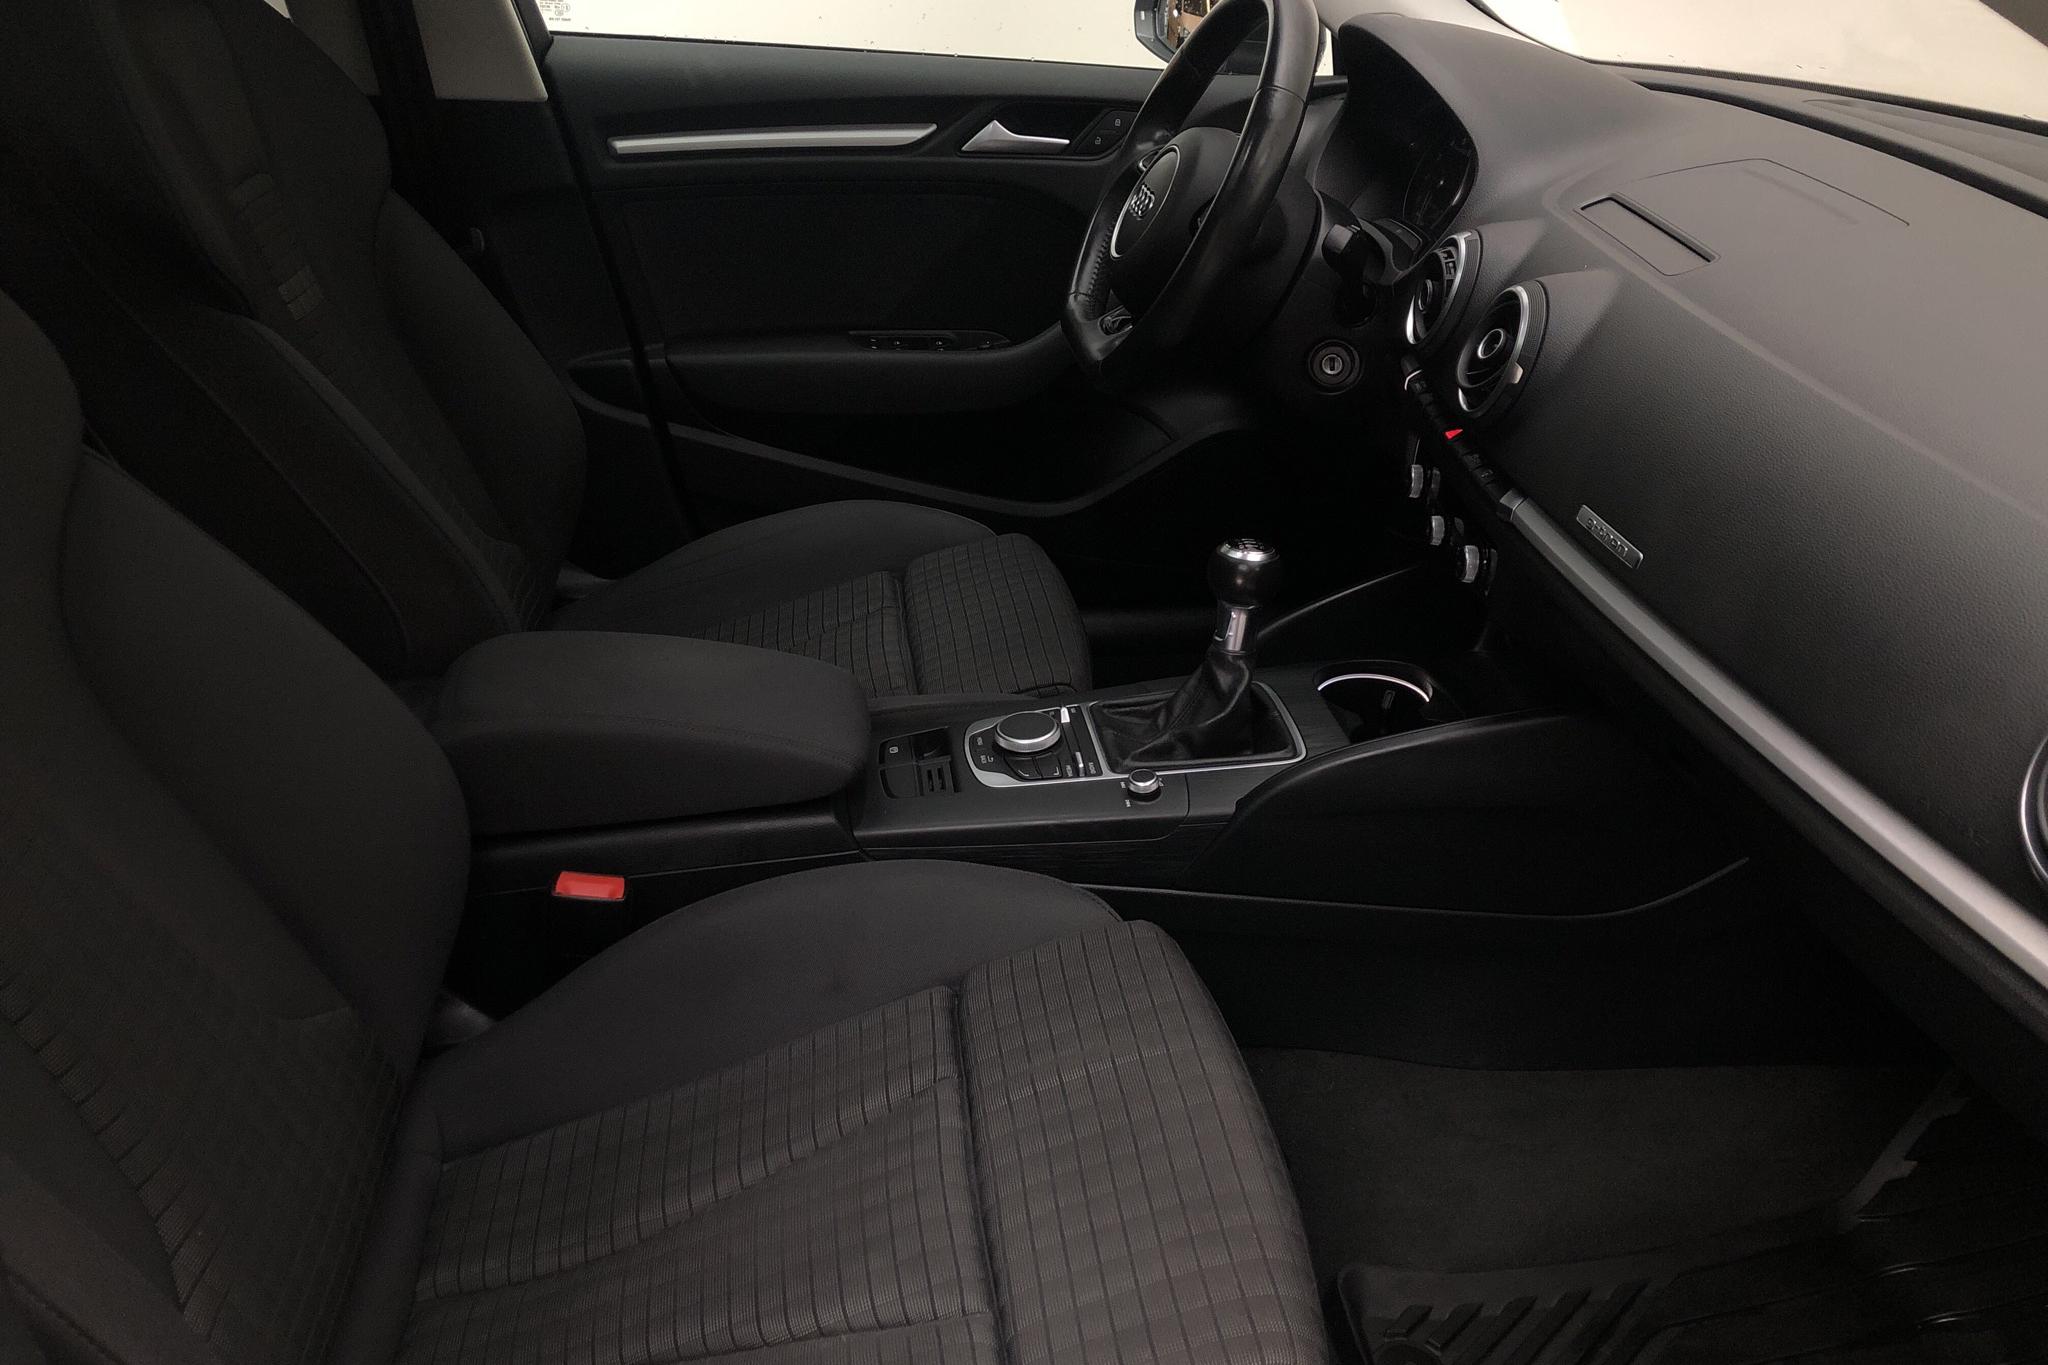 Audi A3 1.4 TFSI g-tron Sportback (110hk) - 102 060 km - Manual - black - 2016